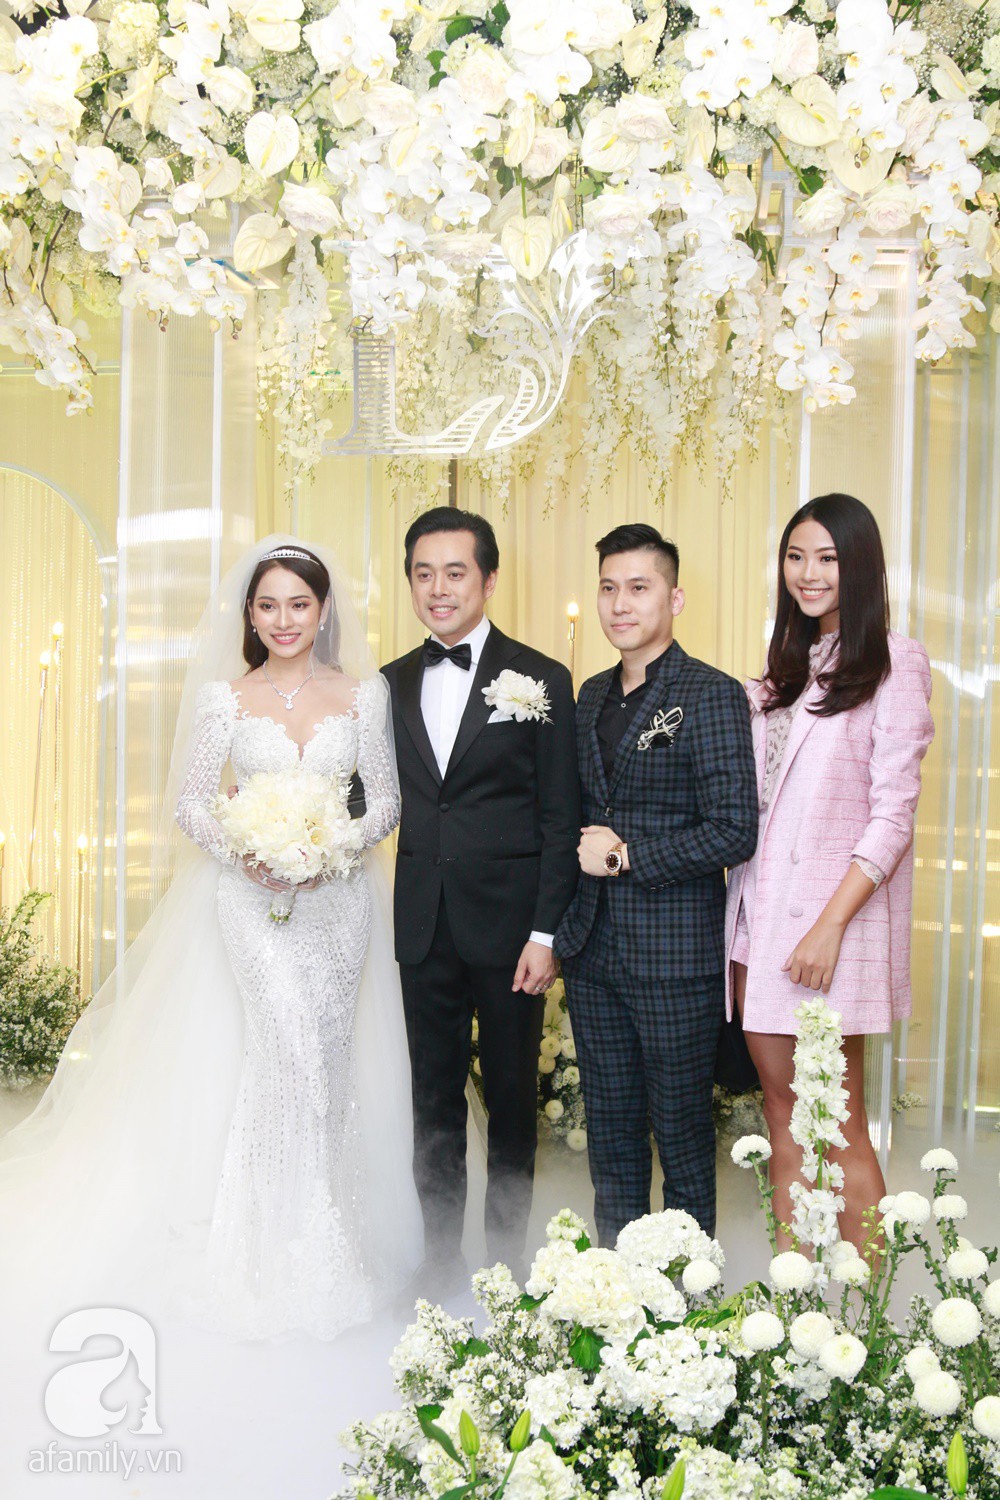 Tiệc cưới chính thức bắt đầu, cô dâu Sara Lưu âu yếm lau nhẹ vết son của mình trên môi chú rể Dương Khắc Linh-36